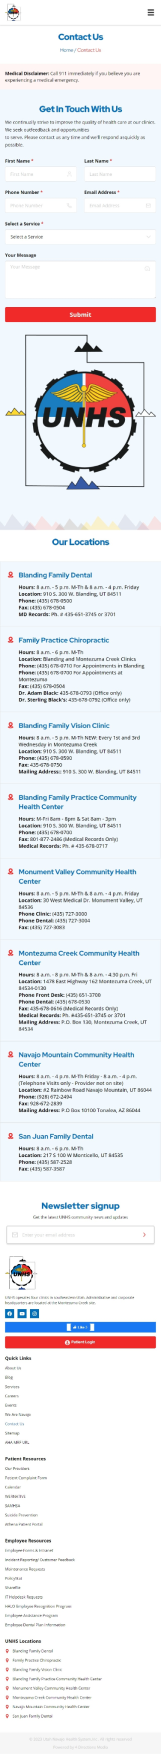 Utah Navajo Health System Inc. Mobile